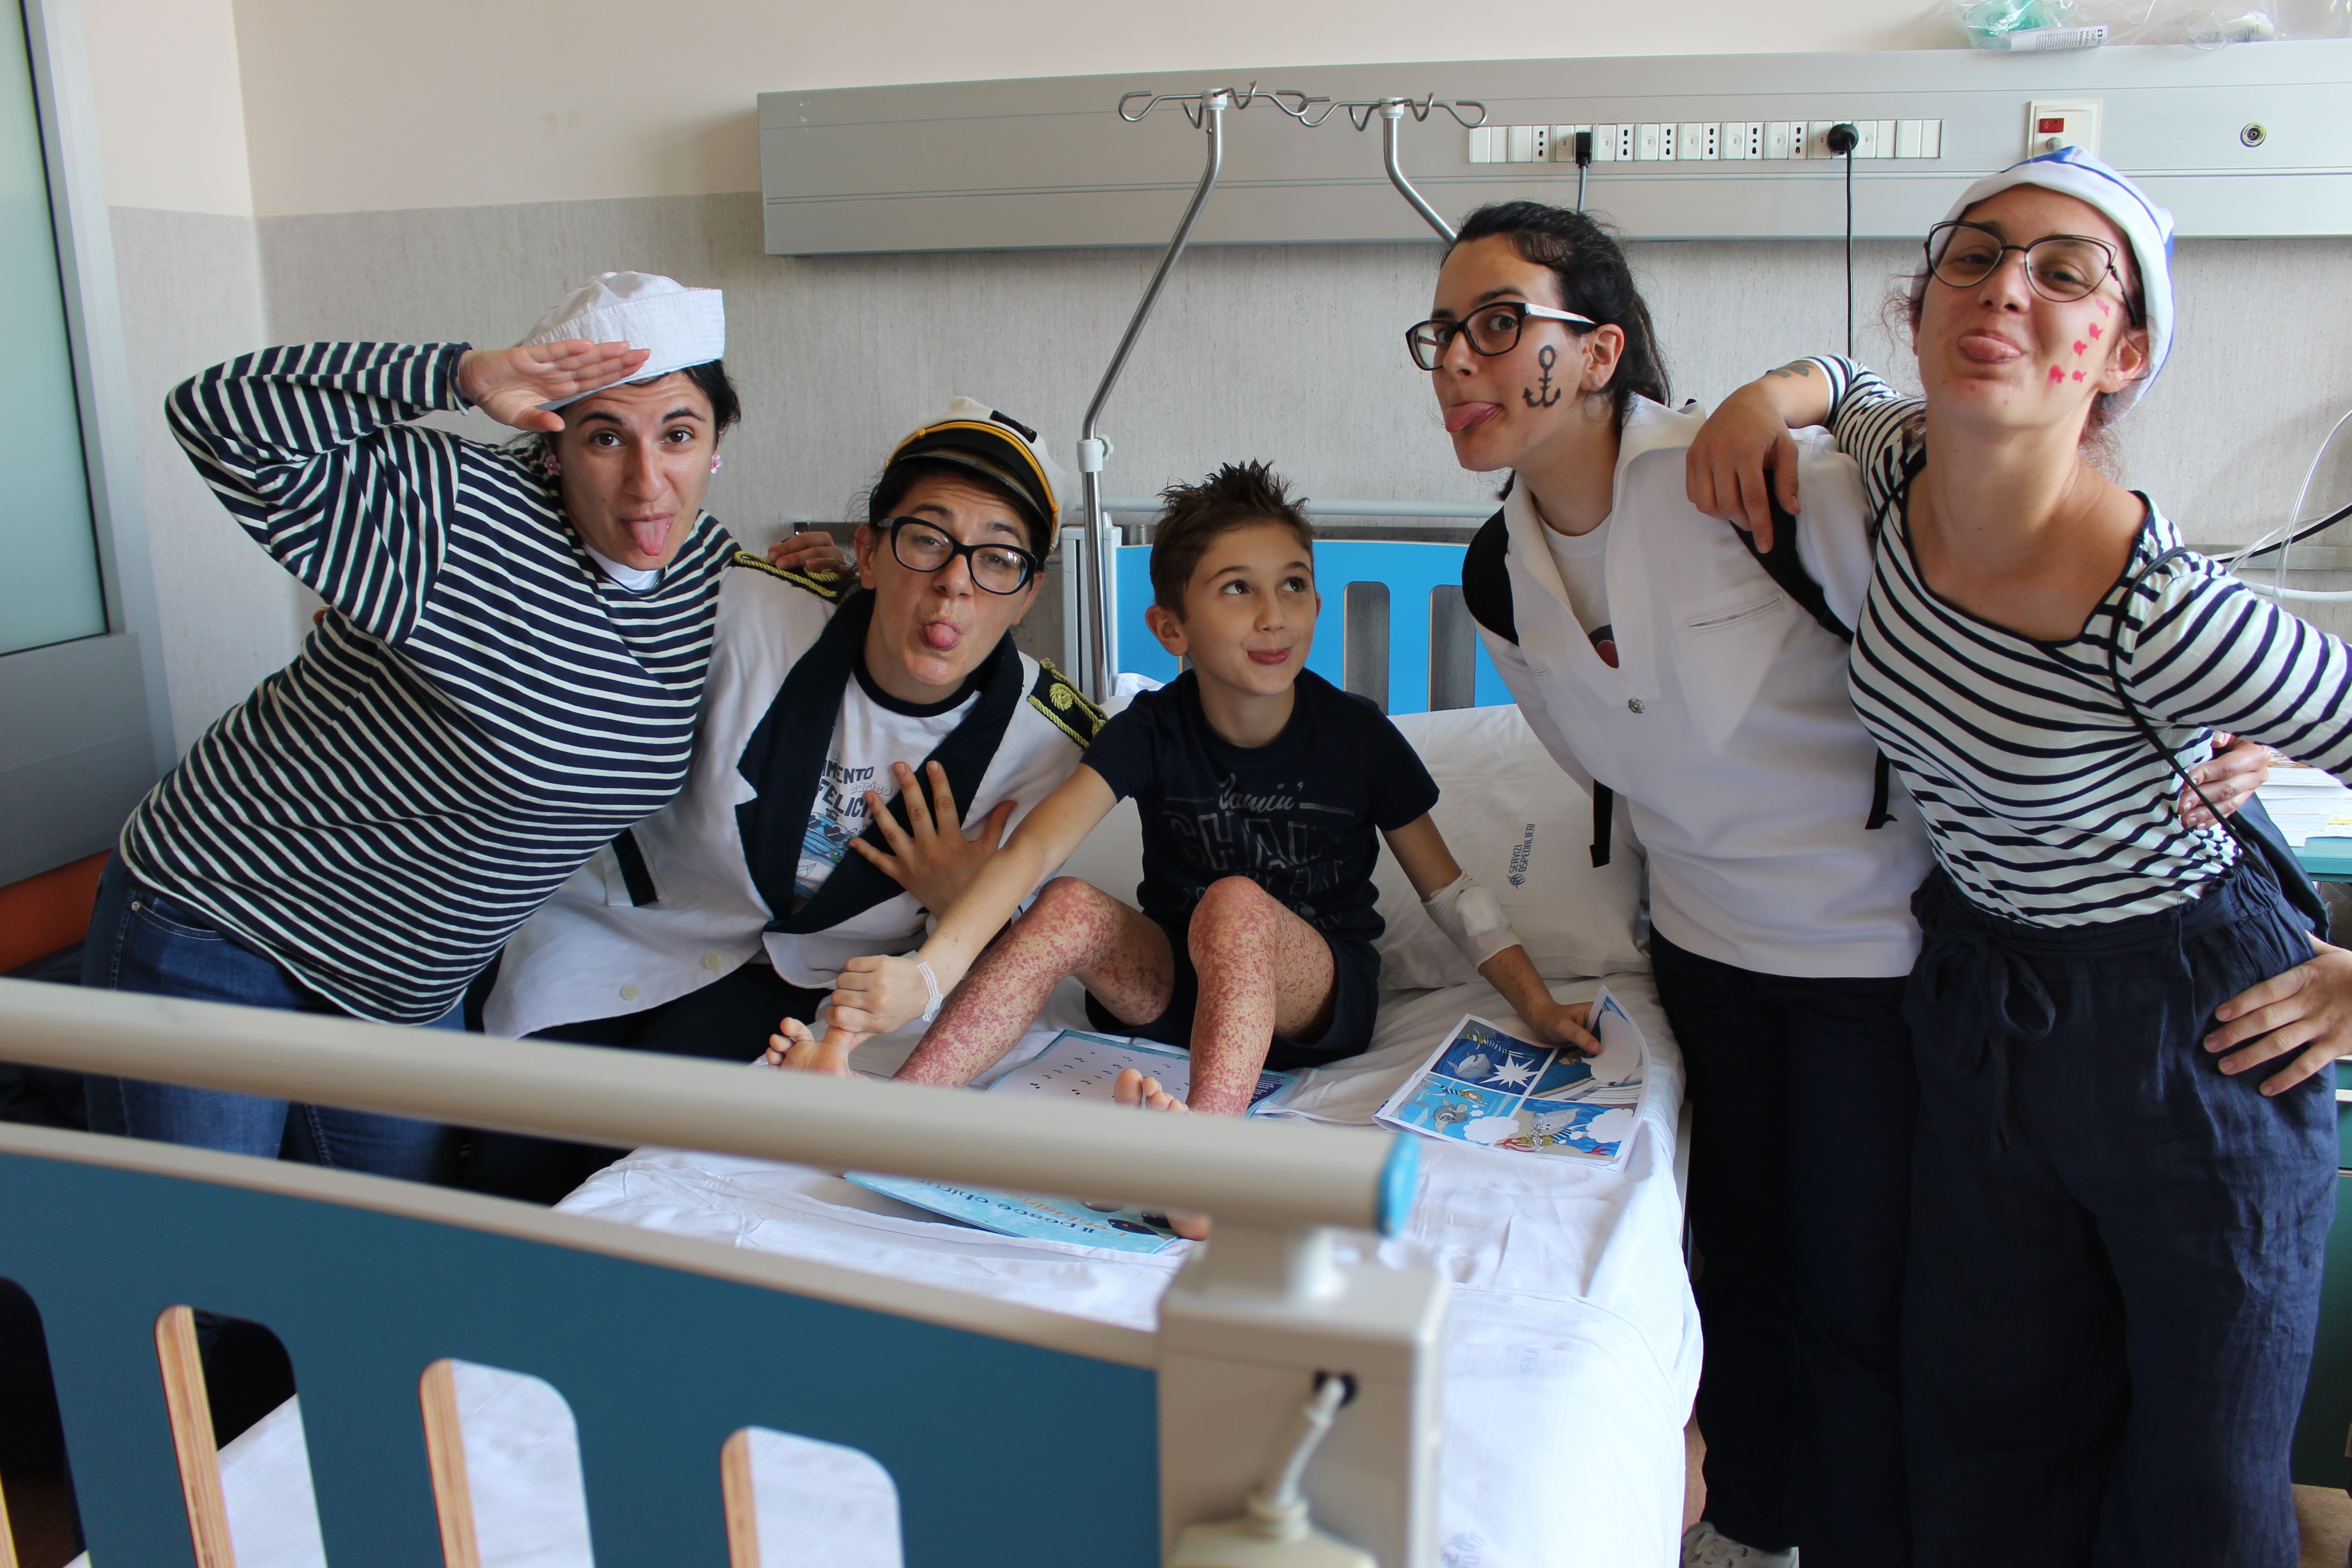 #ventoafavore per i bambini in ospedale-Il Porto dei piccoli